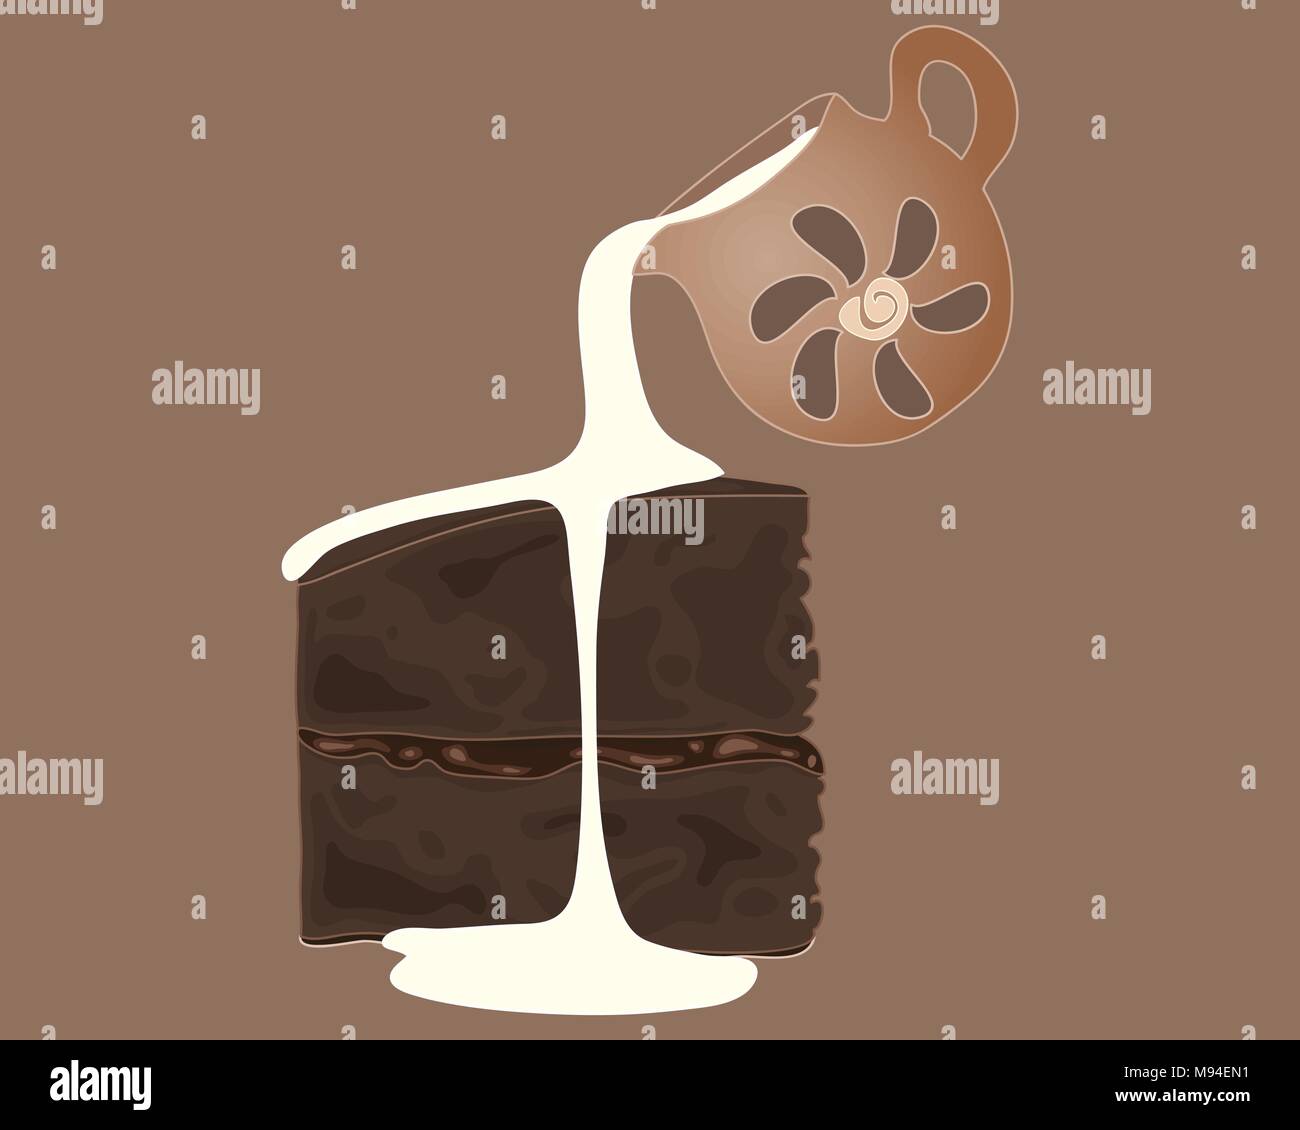 Une illustration d'un morceau de gâteau au chocolat avec un petit pot de crème verser sur un fond brun Illustration de Vecteur